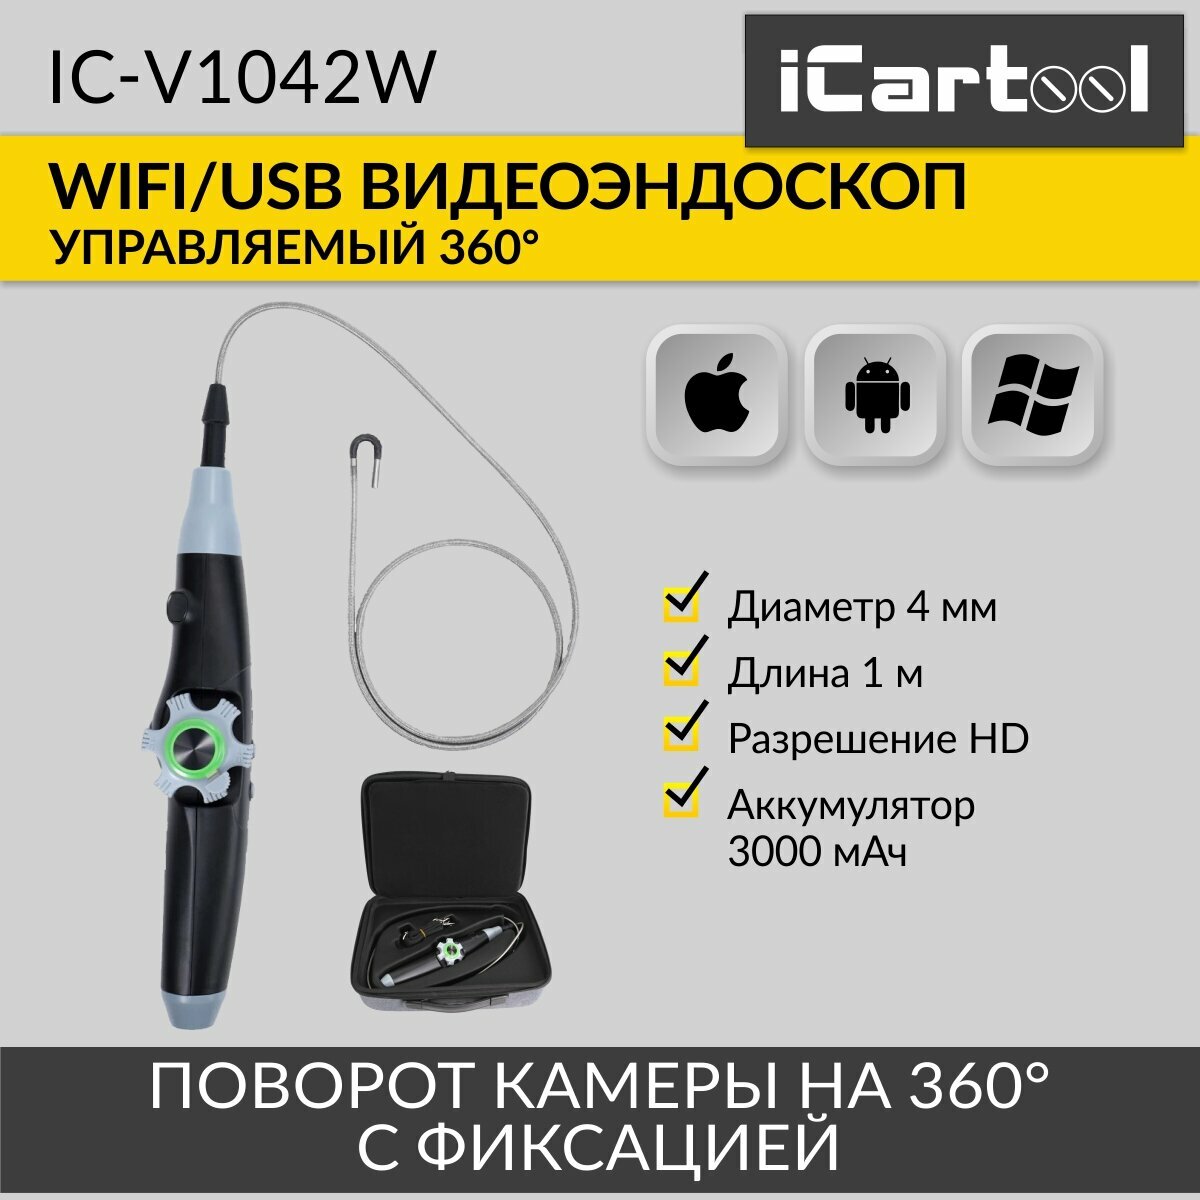 Автомобильный управляемый видеоэндоскоп WIFI/USB, 1Мп, 1168х720, 1м, зонд 4мм, 360° iCartool IC-V1042W